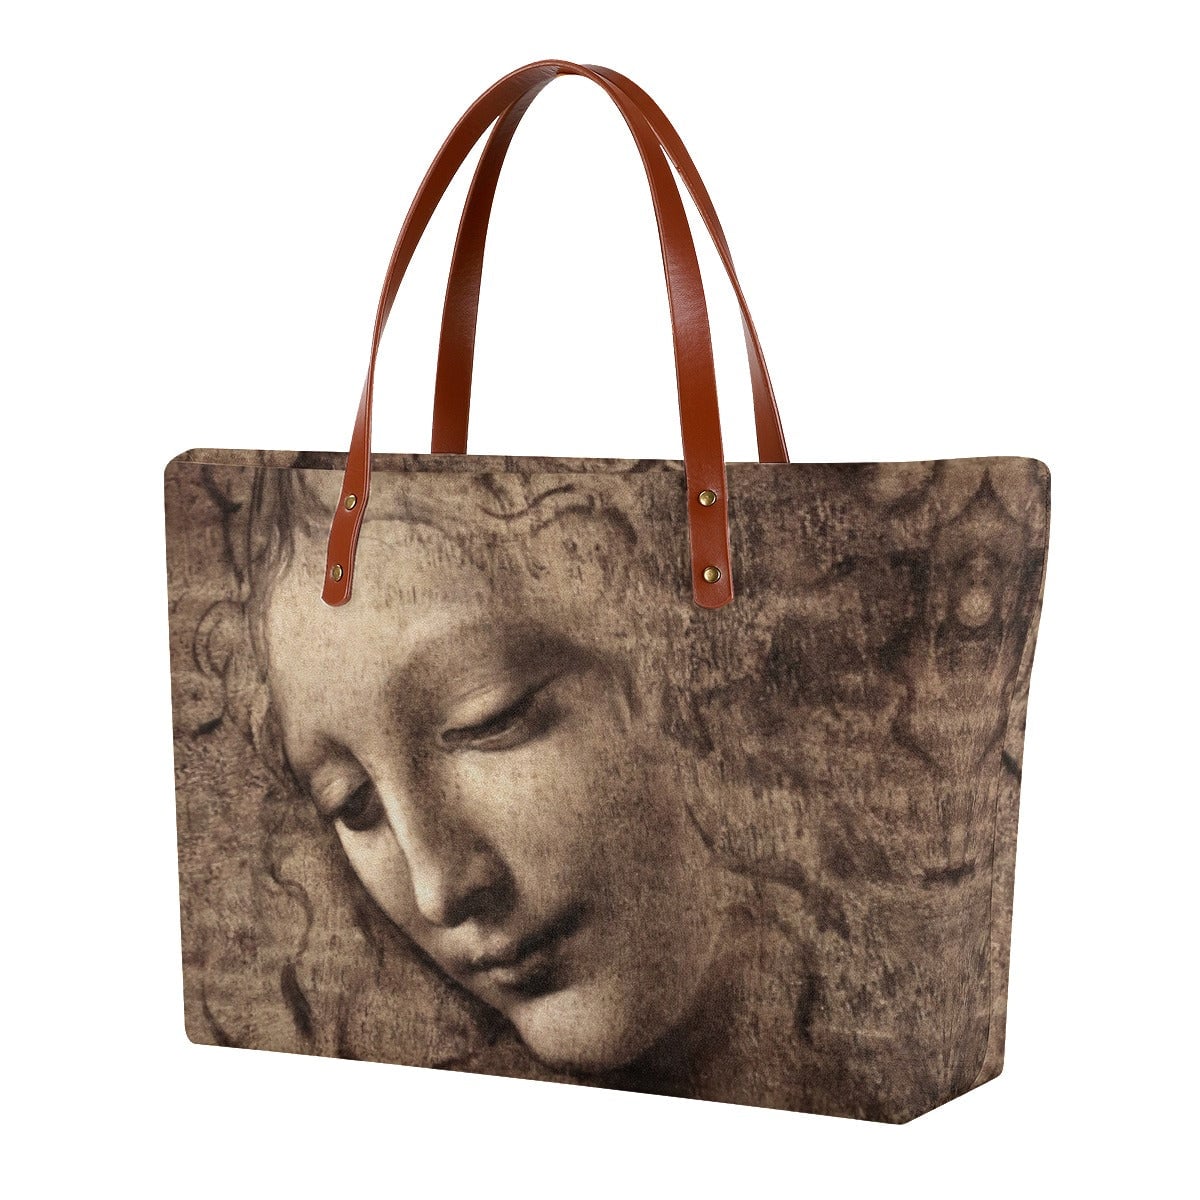 La Scapigliata by Leonardo da Vinci Tote Bag